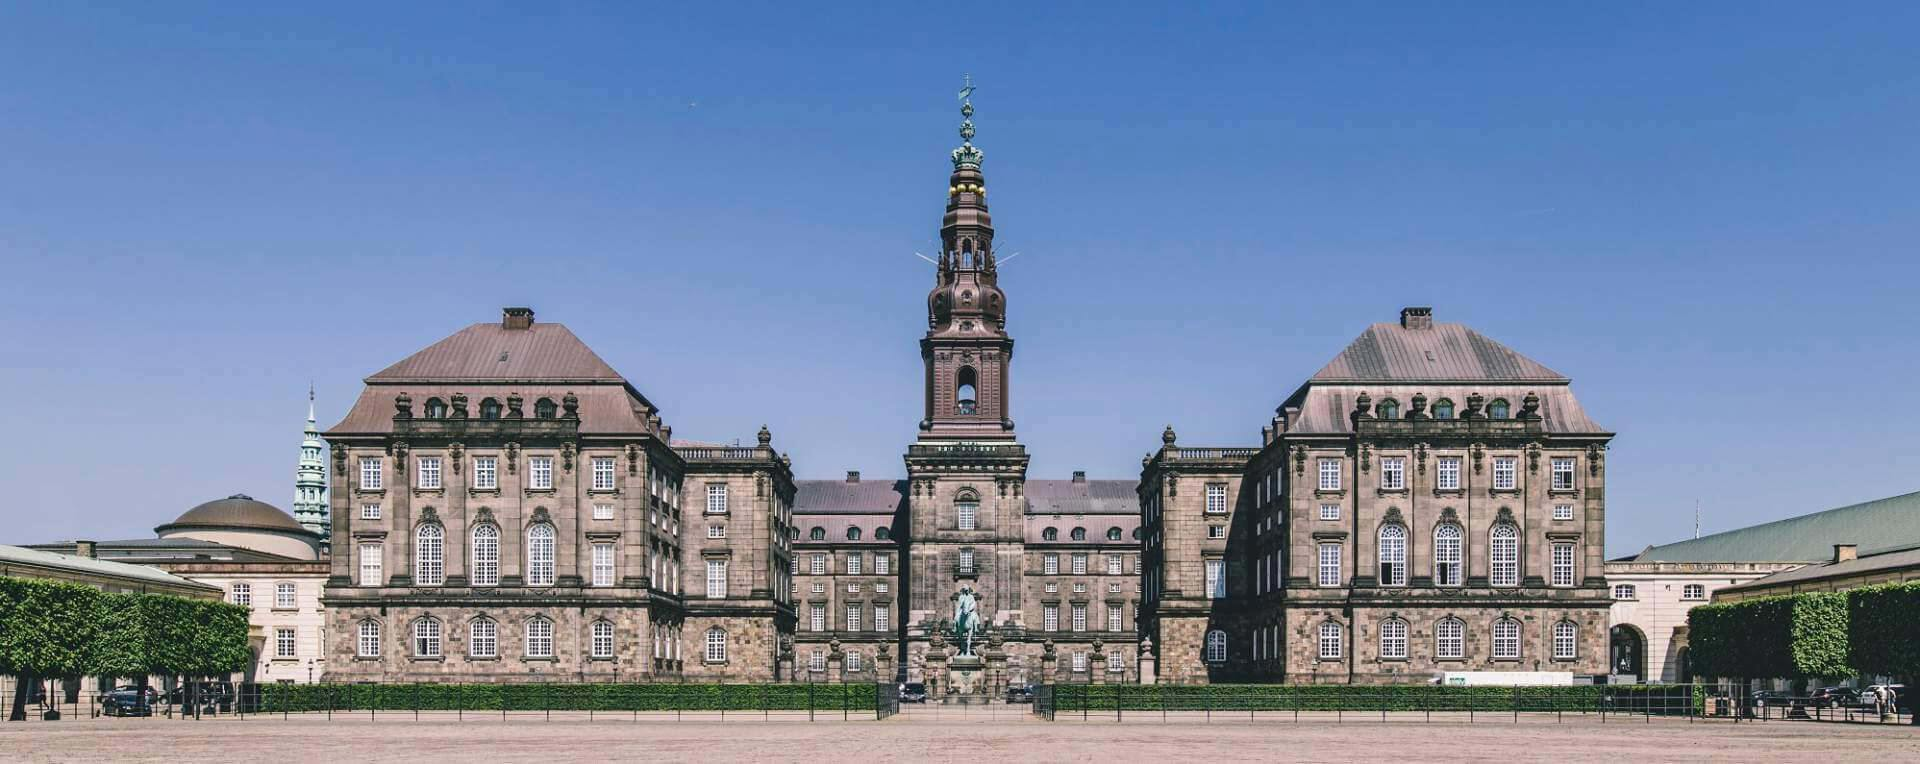 bývalý královský palác v Kodani